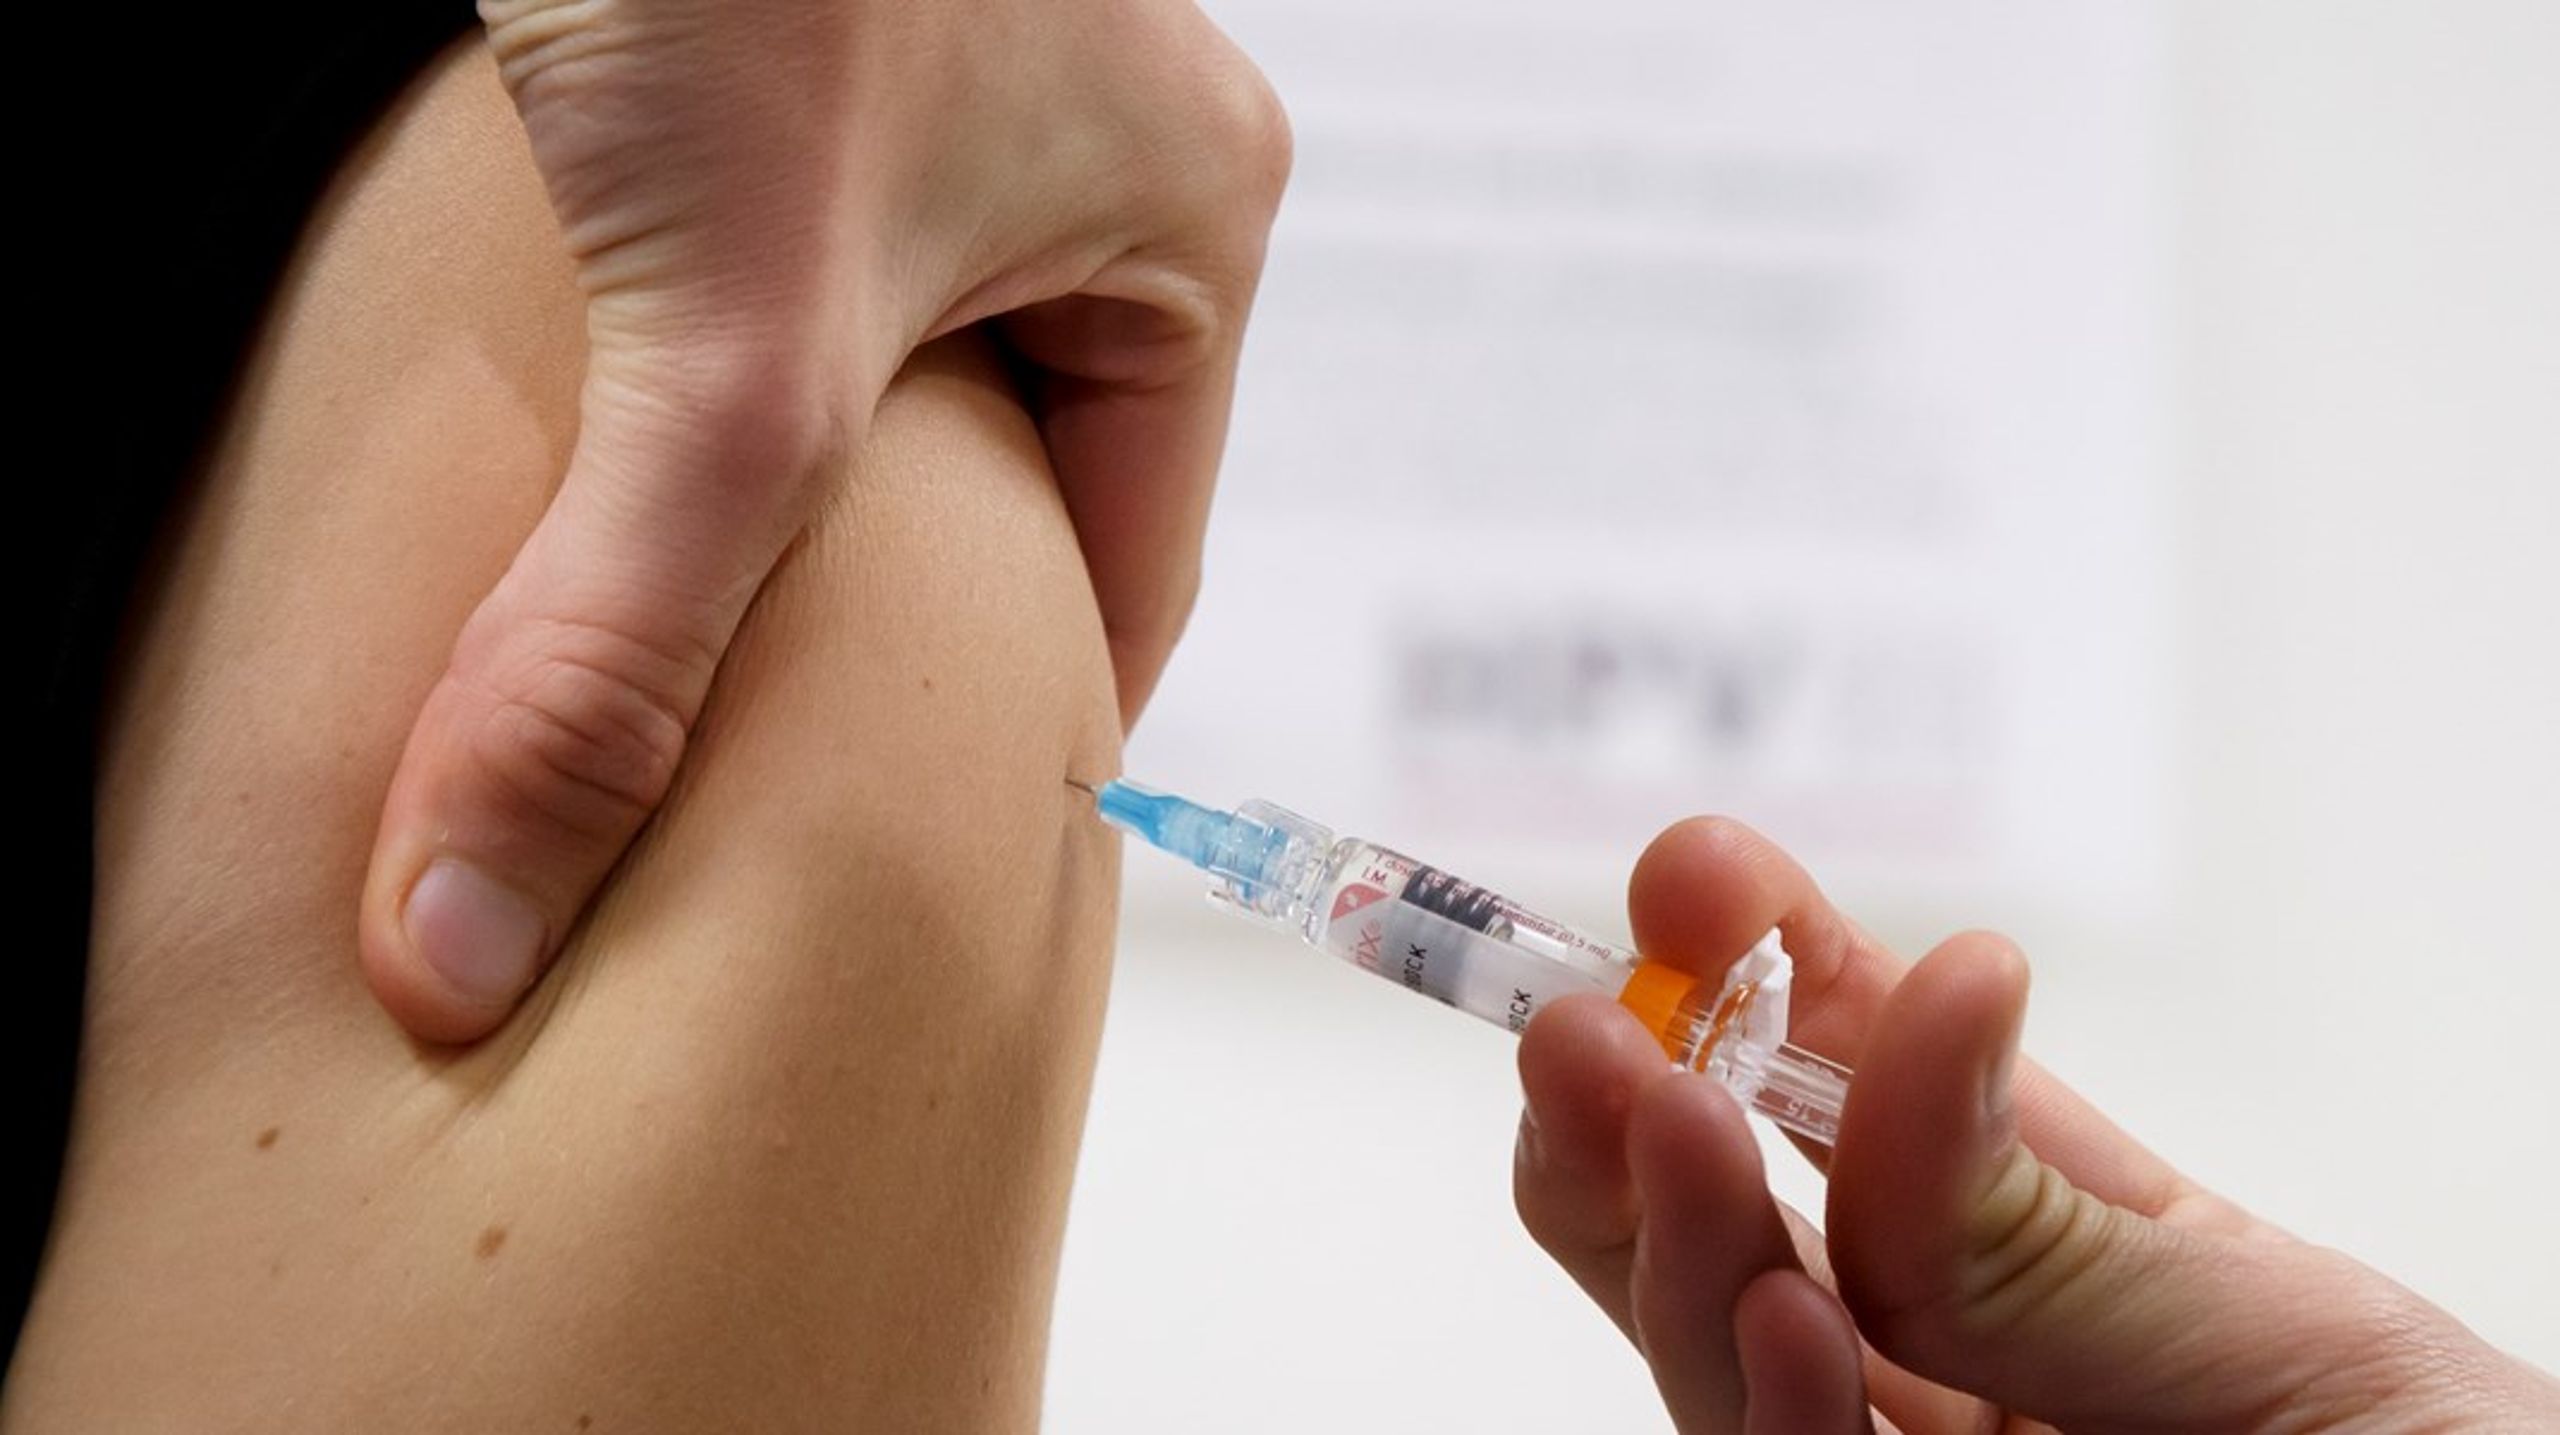 Moderaterna är fast beslutad om att utrota livmoderhalscancer. Ett steg i det är att utöka vaccinationen mot HPV, skriver debattören.